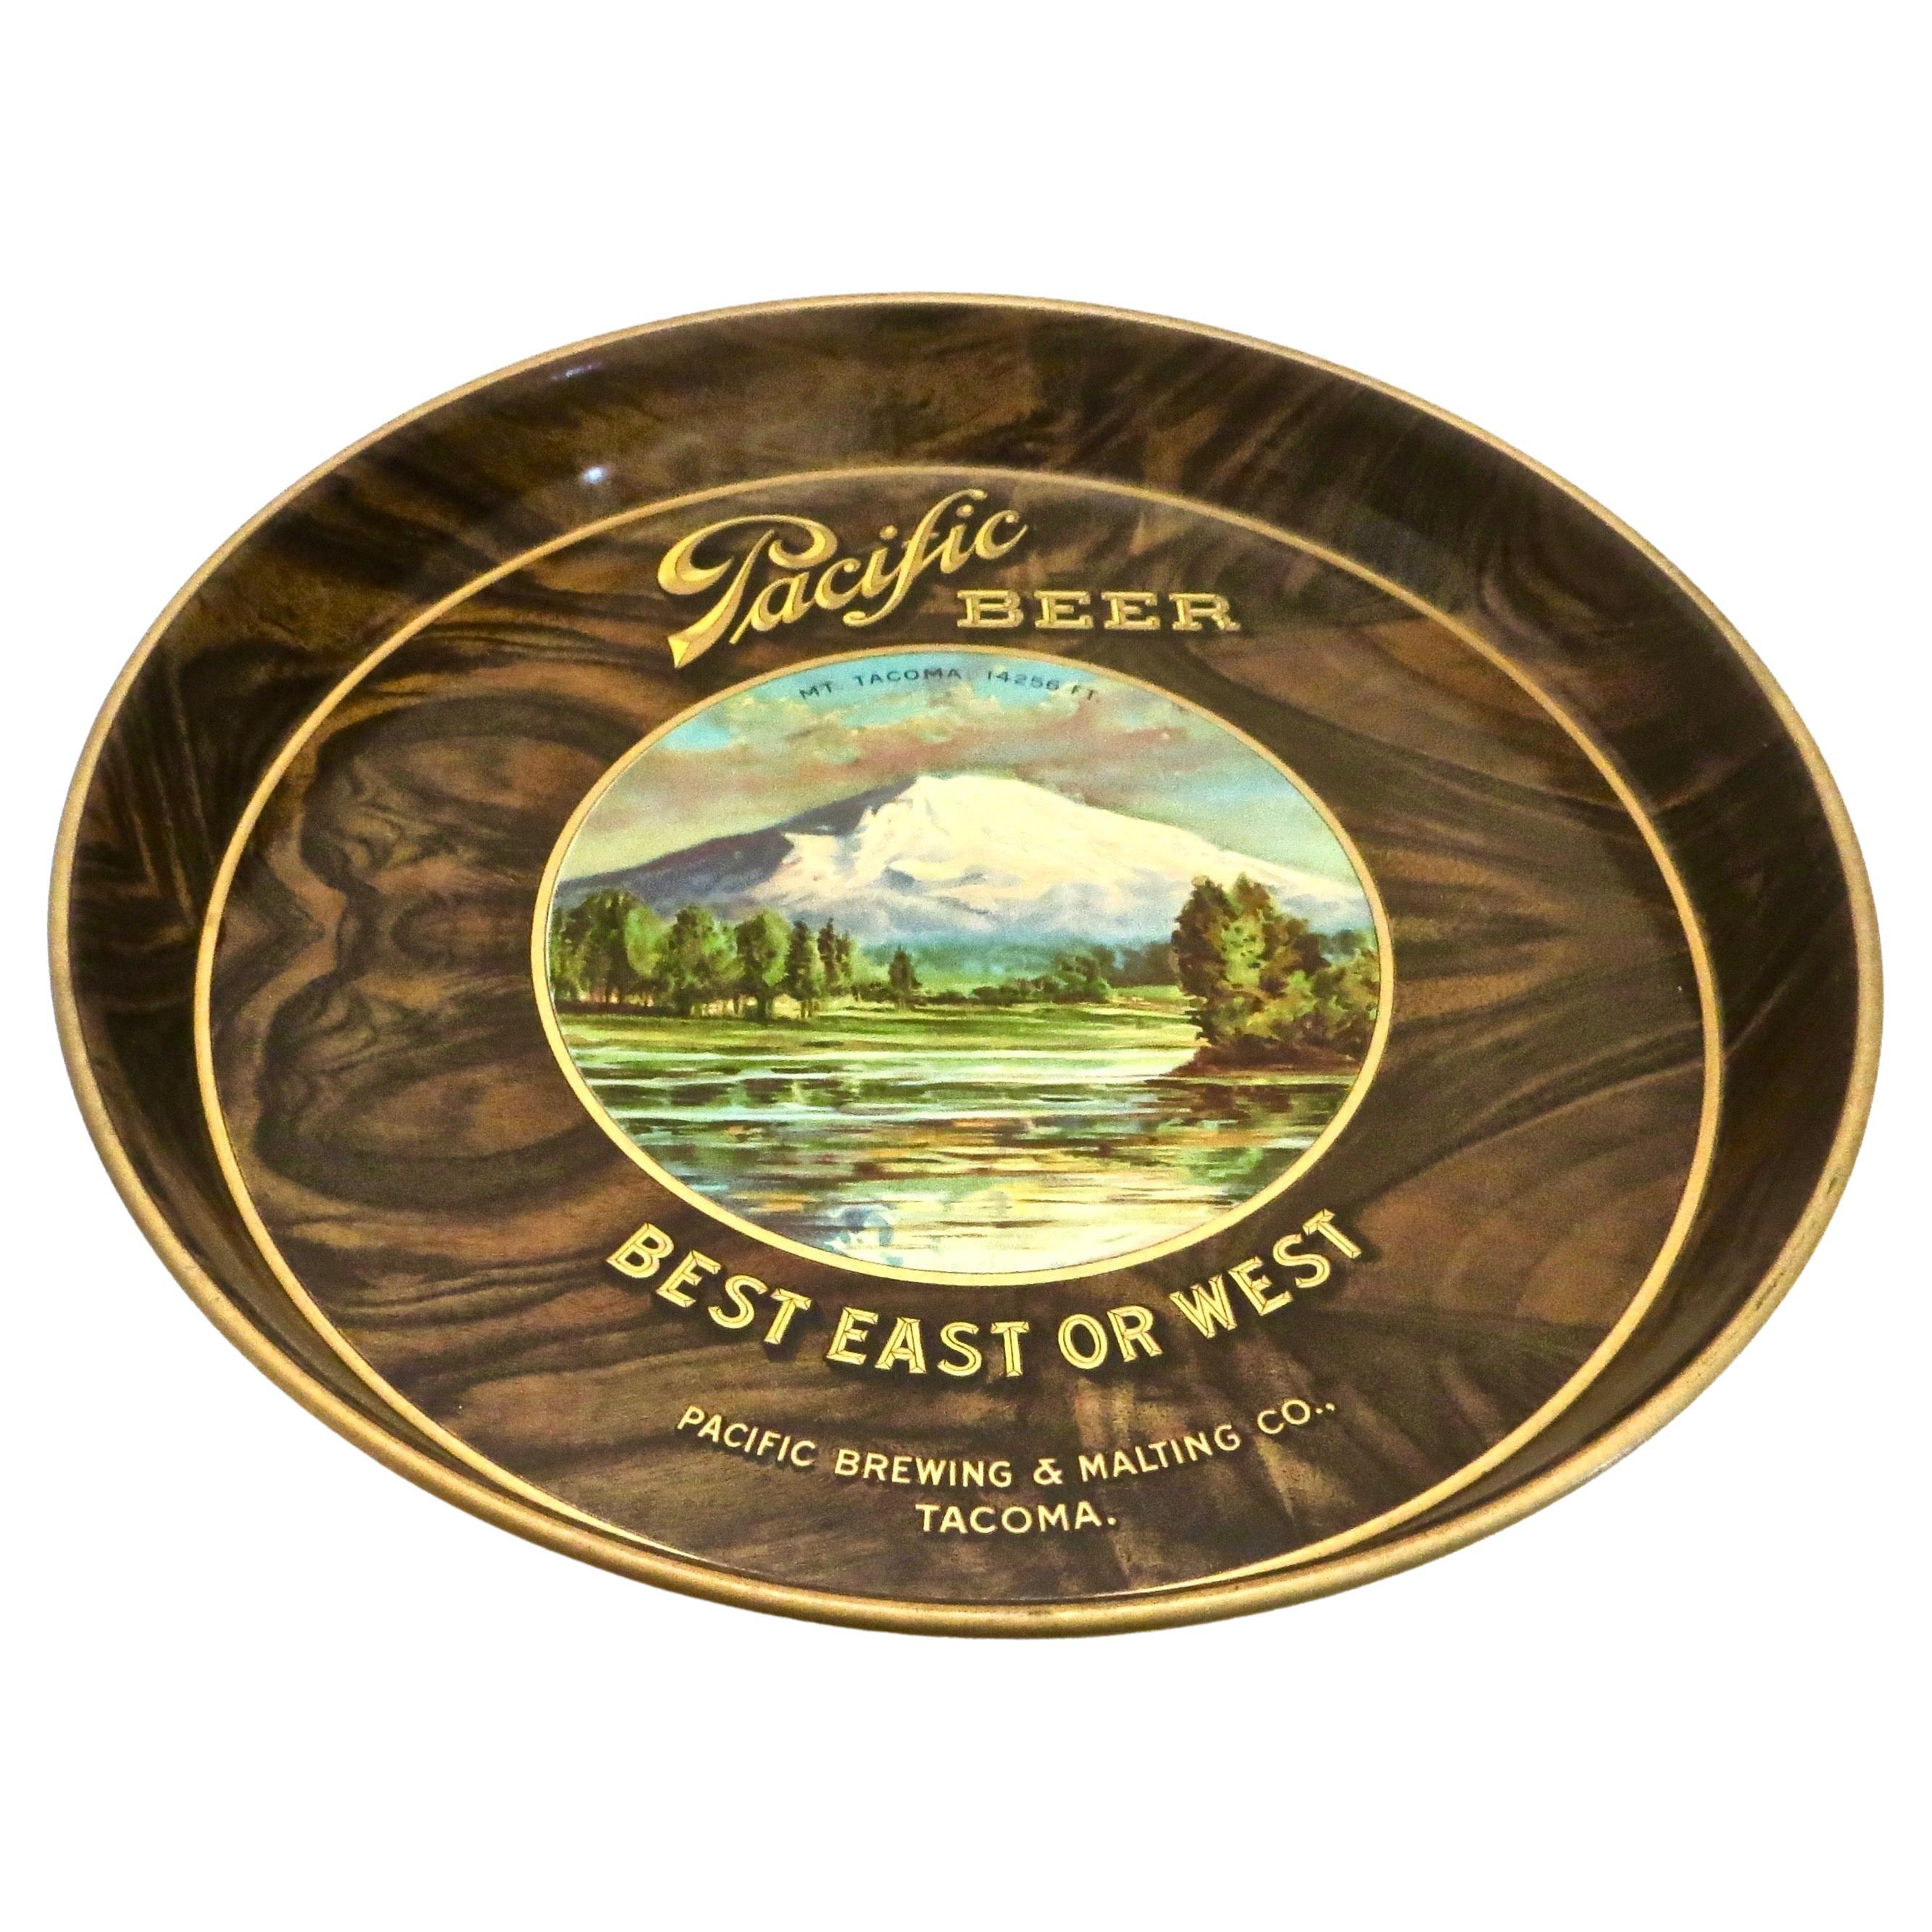 Plateau publicitaire en étain « Pacifique Beer » Tacoma, Washington, vers 1910